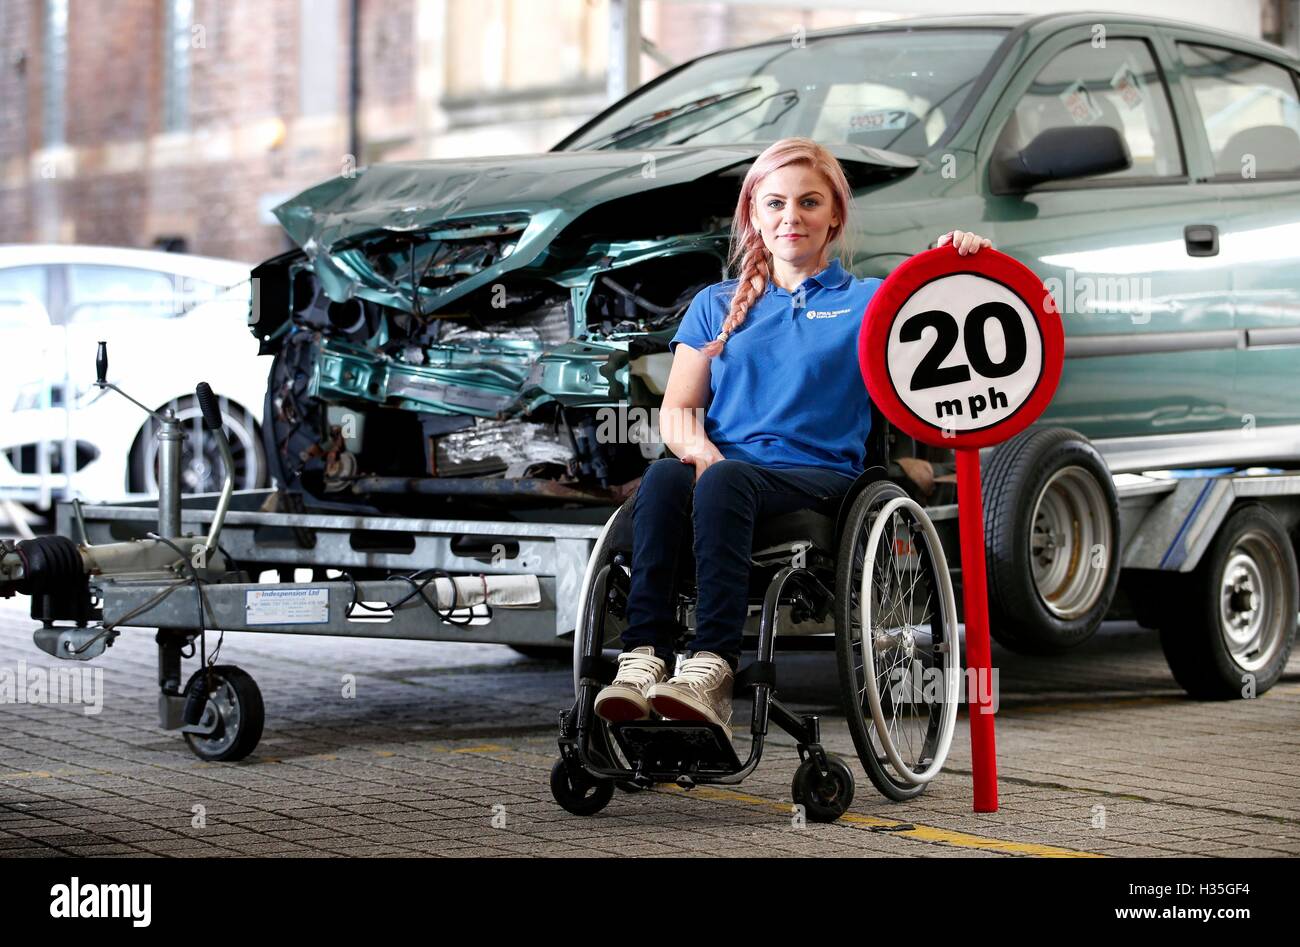 Crash sobreviviente Laura Torrance, de 33 años, compartió sus experiencias para resaltar la seguridad vial en calles adelante jóvenes pilotos de Edimburgo, una multi-agencia de eventos educación vial en Edimburgo. Foto de stock